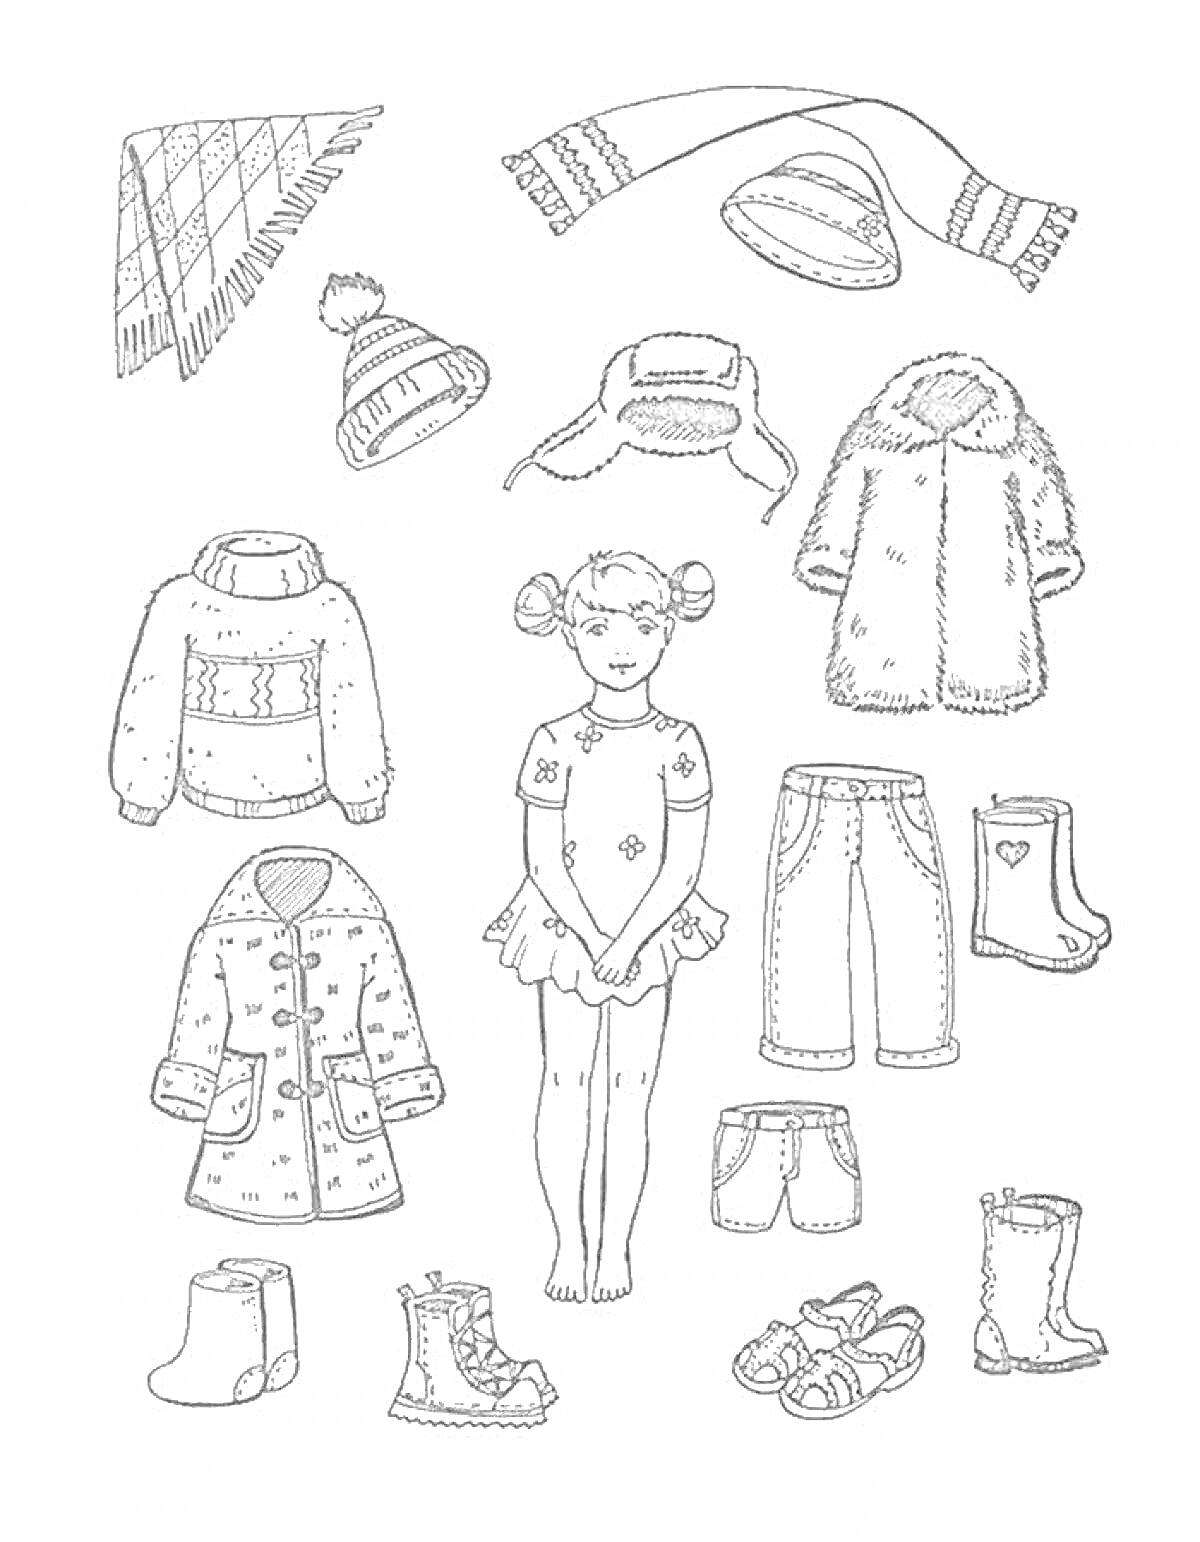 Девочка в платье среди детской верхней одежды и обуви: шапка с помпоном, ушанка, шляпа, шарф, пальто с капюшоном, свитер, длинное пальто с пуговицами, джинсы, ботинки, туфли, сапоги и босоножки.